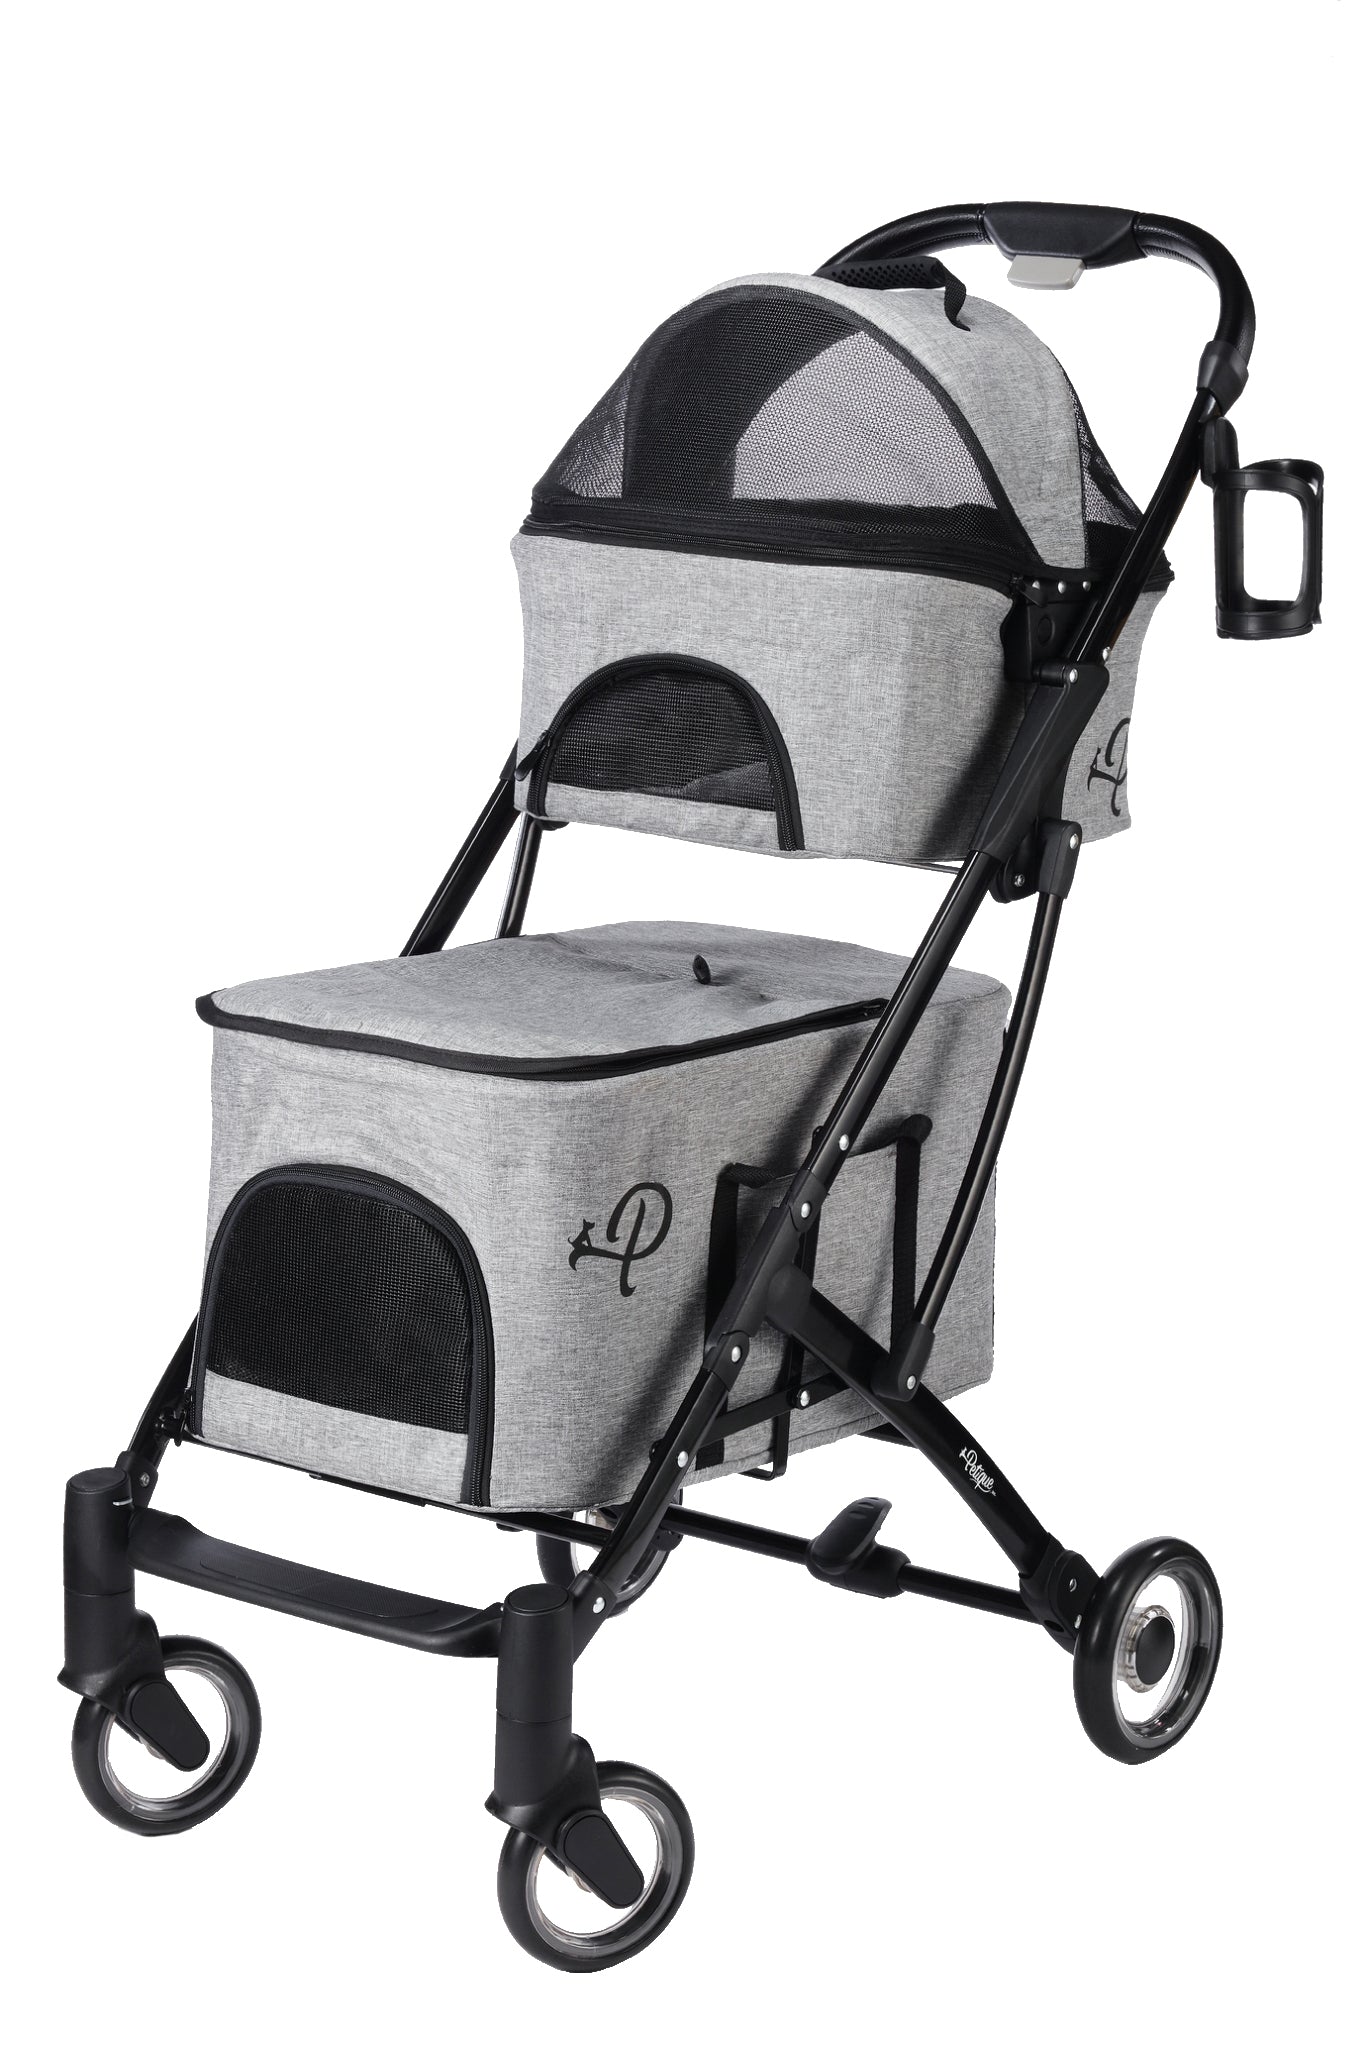 deluxe double decker pet stroller gray